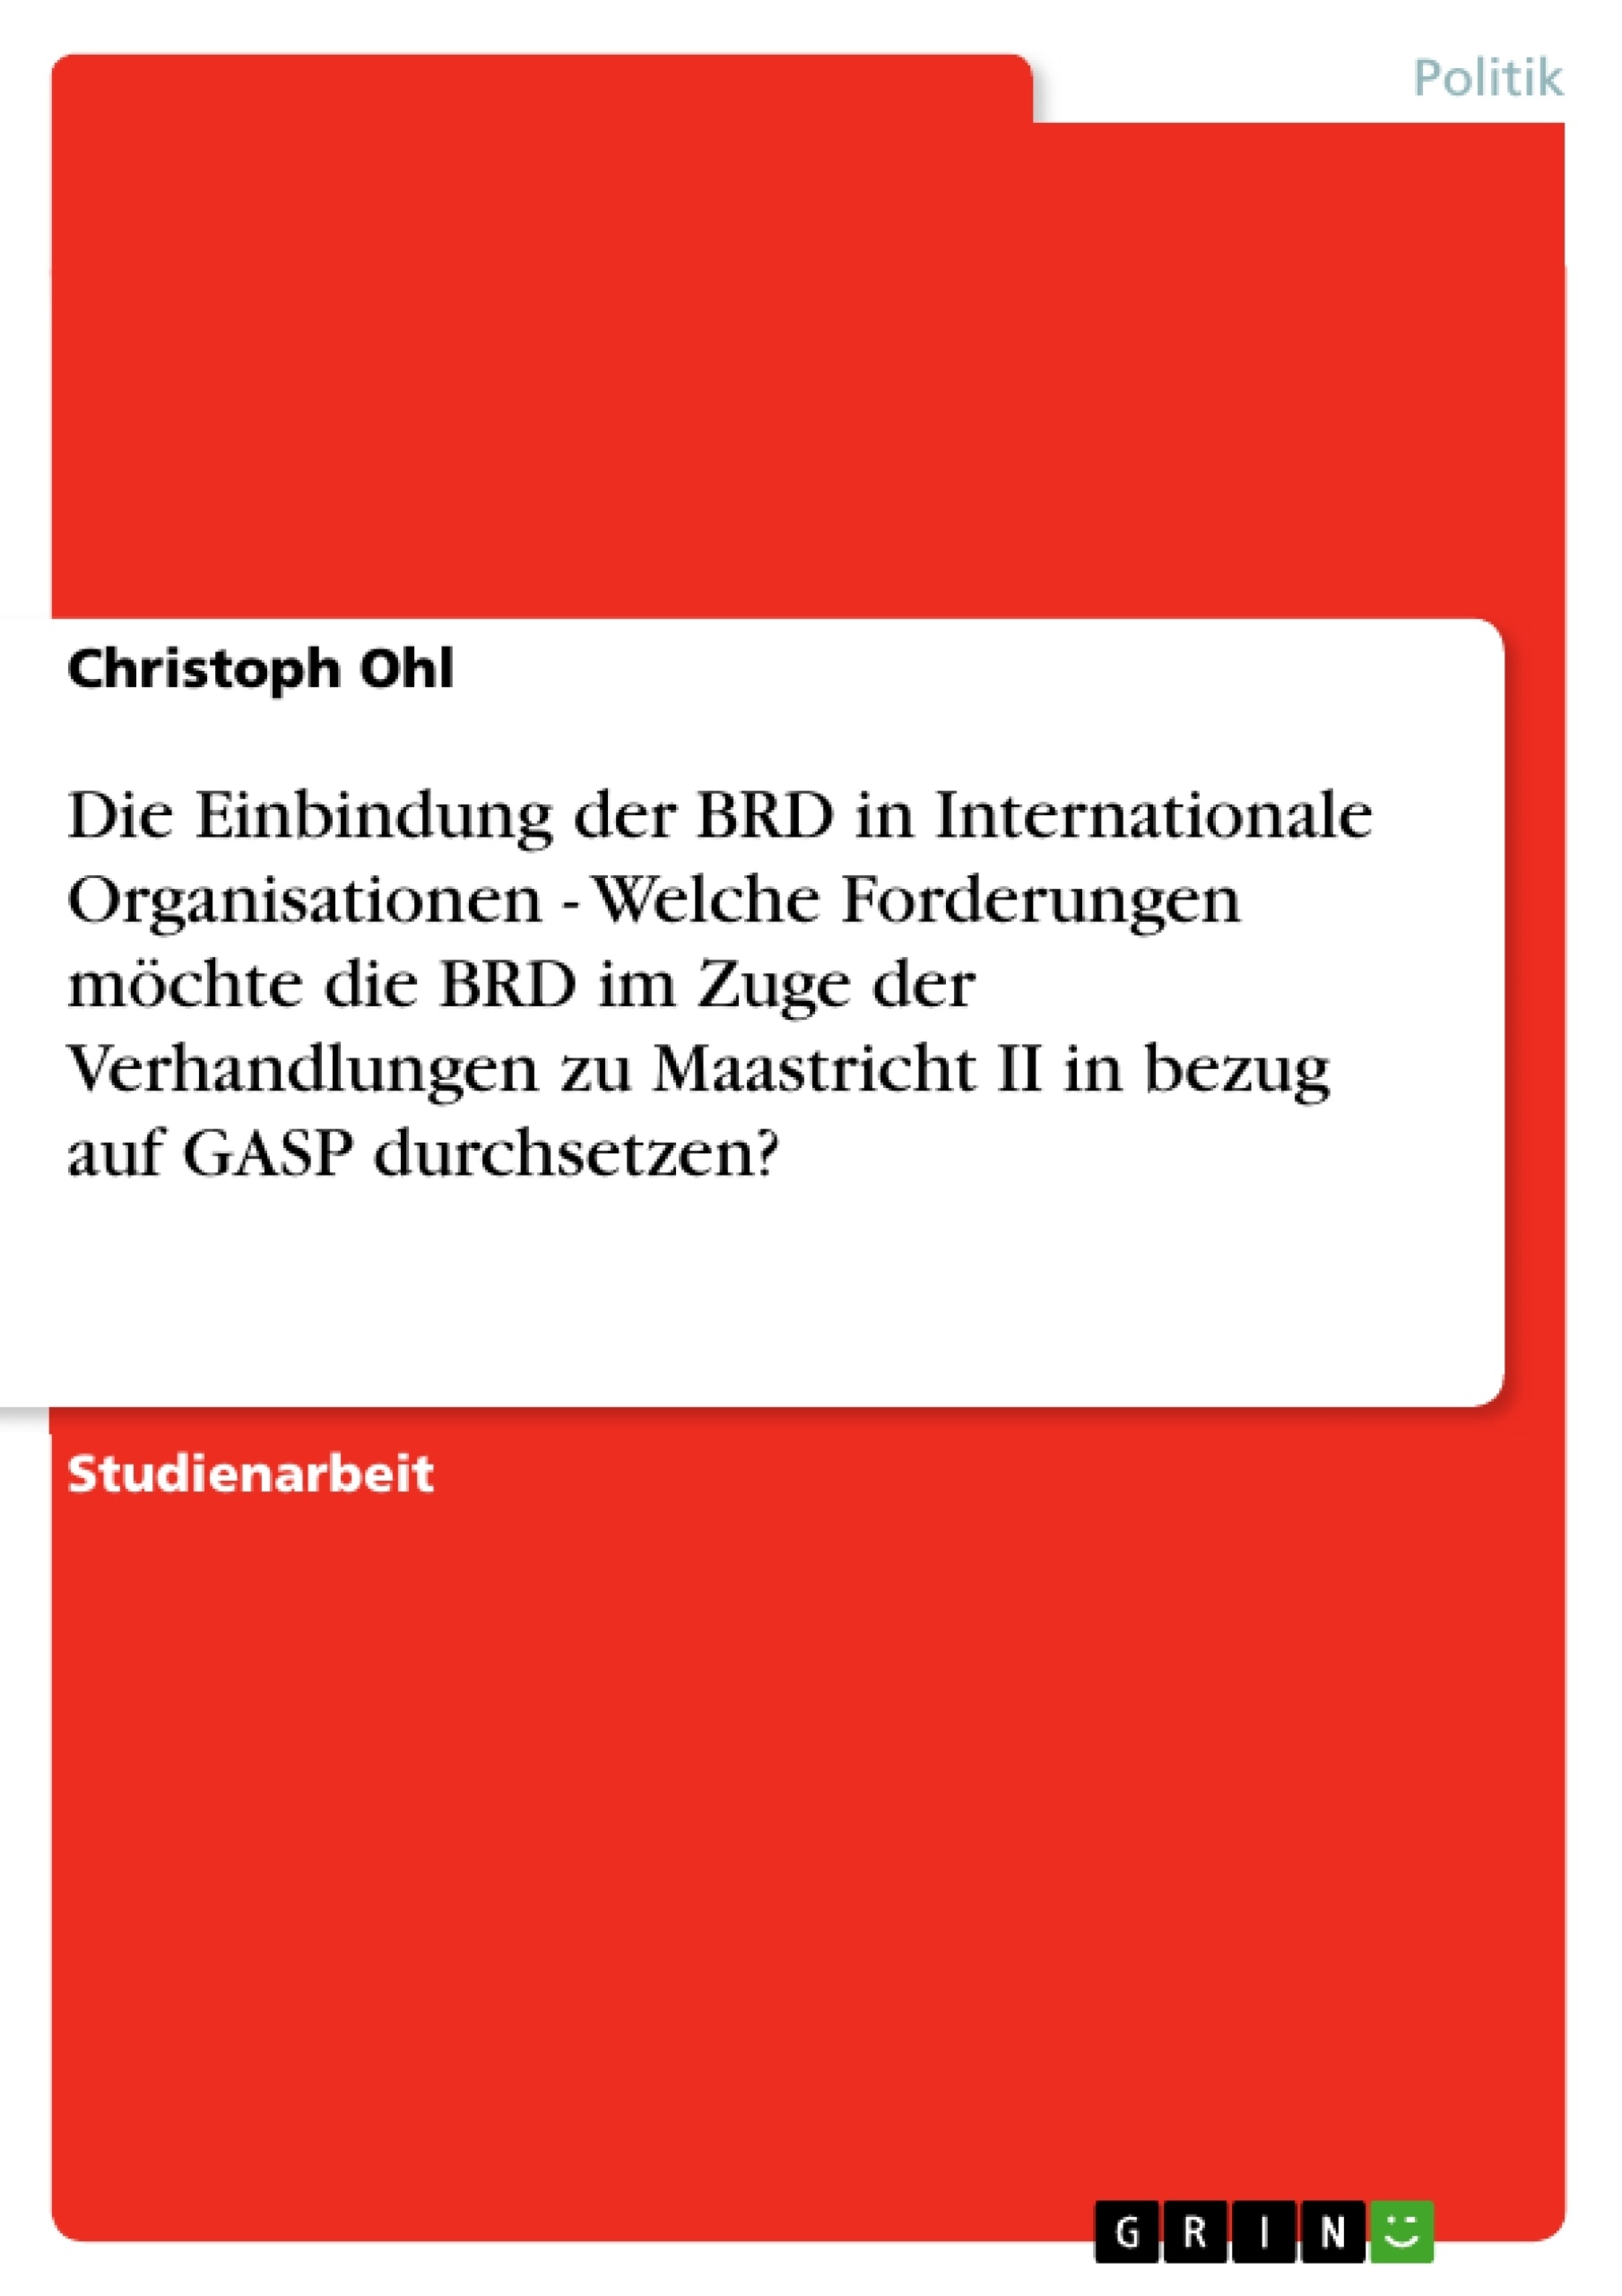 Titel: Die Einbindung der BRD in Internationale Organisationen - Welche Forderungen möchte die BRD im Zuge der Verhandlungen zu Maastricht II in bezug auf GASP durchsetzen?